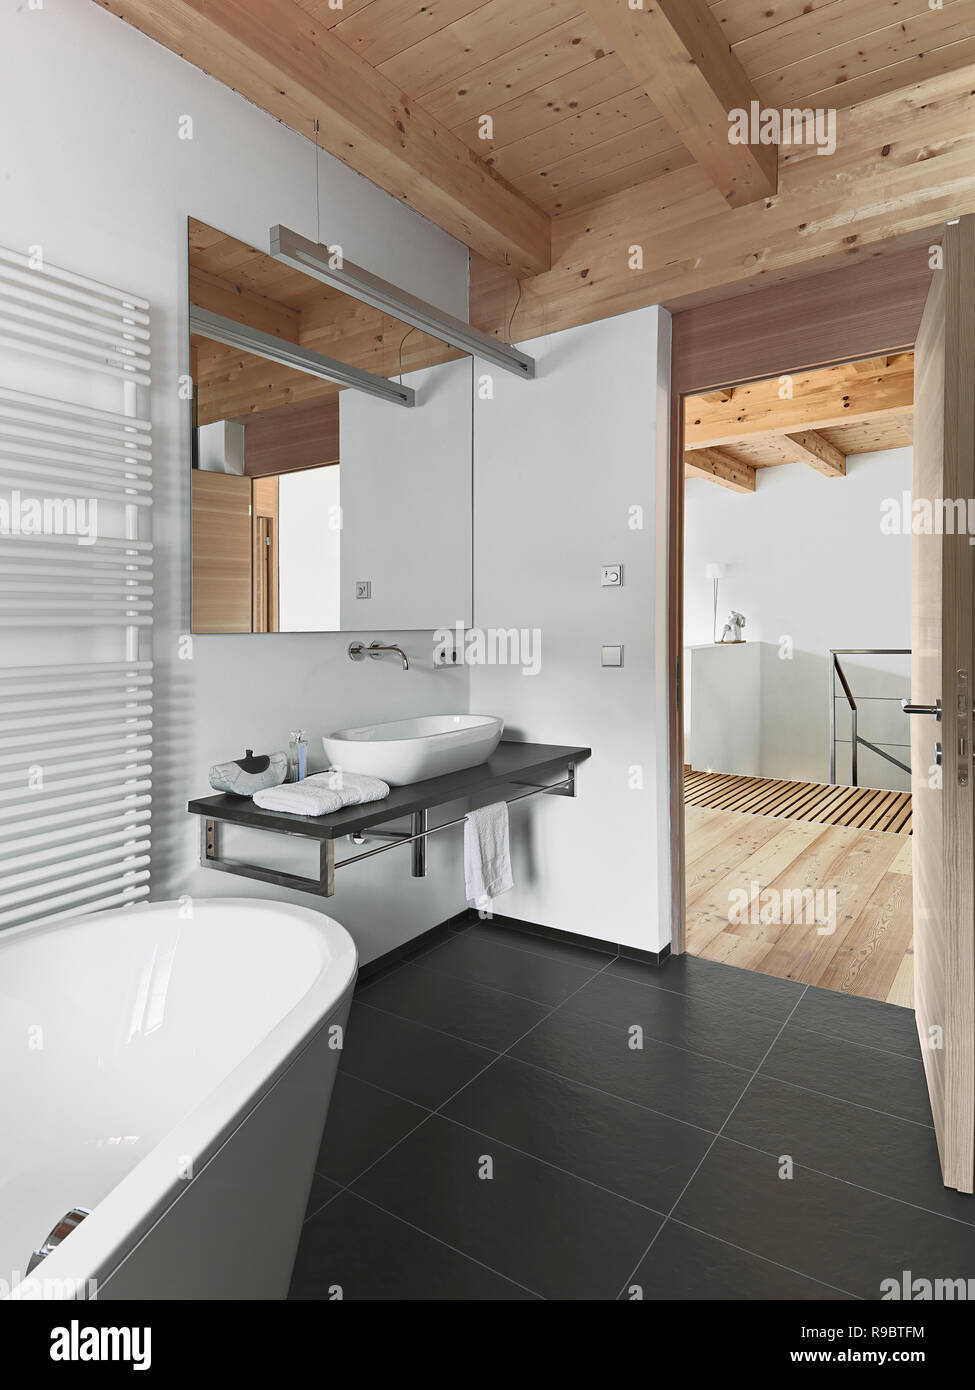 Fotografías de interiores de un baño moderno con techos de madera en el fondo de la bañera y el Lavabo encimera Foto de stock